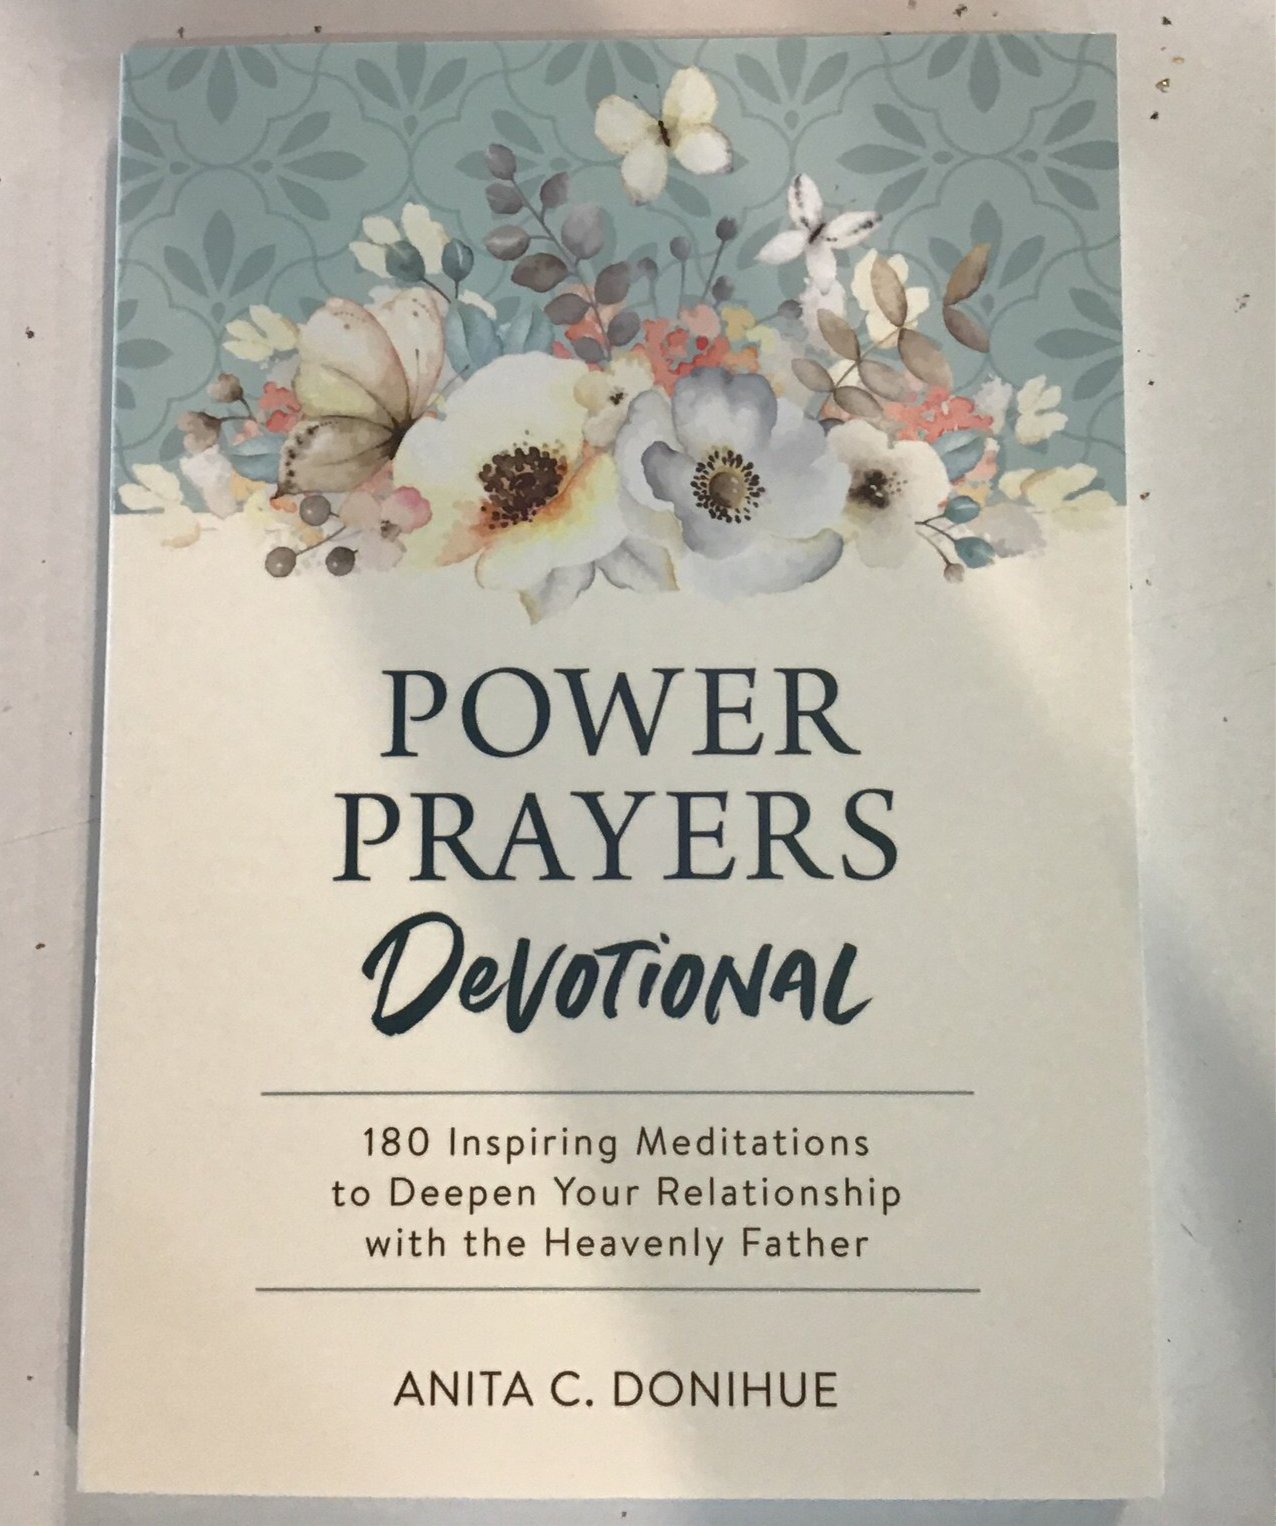 Power Prayers Devotional